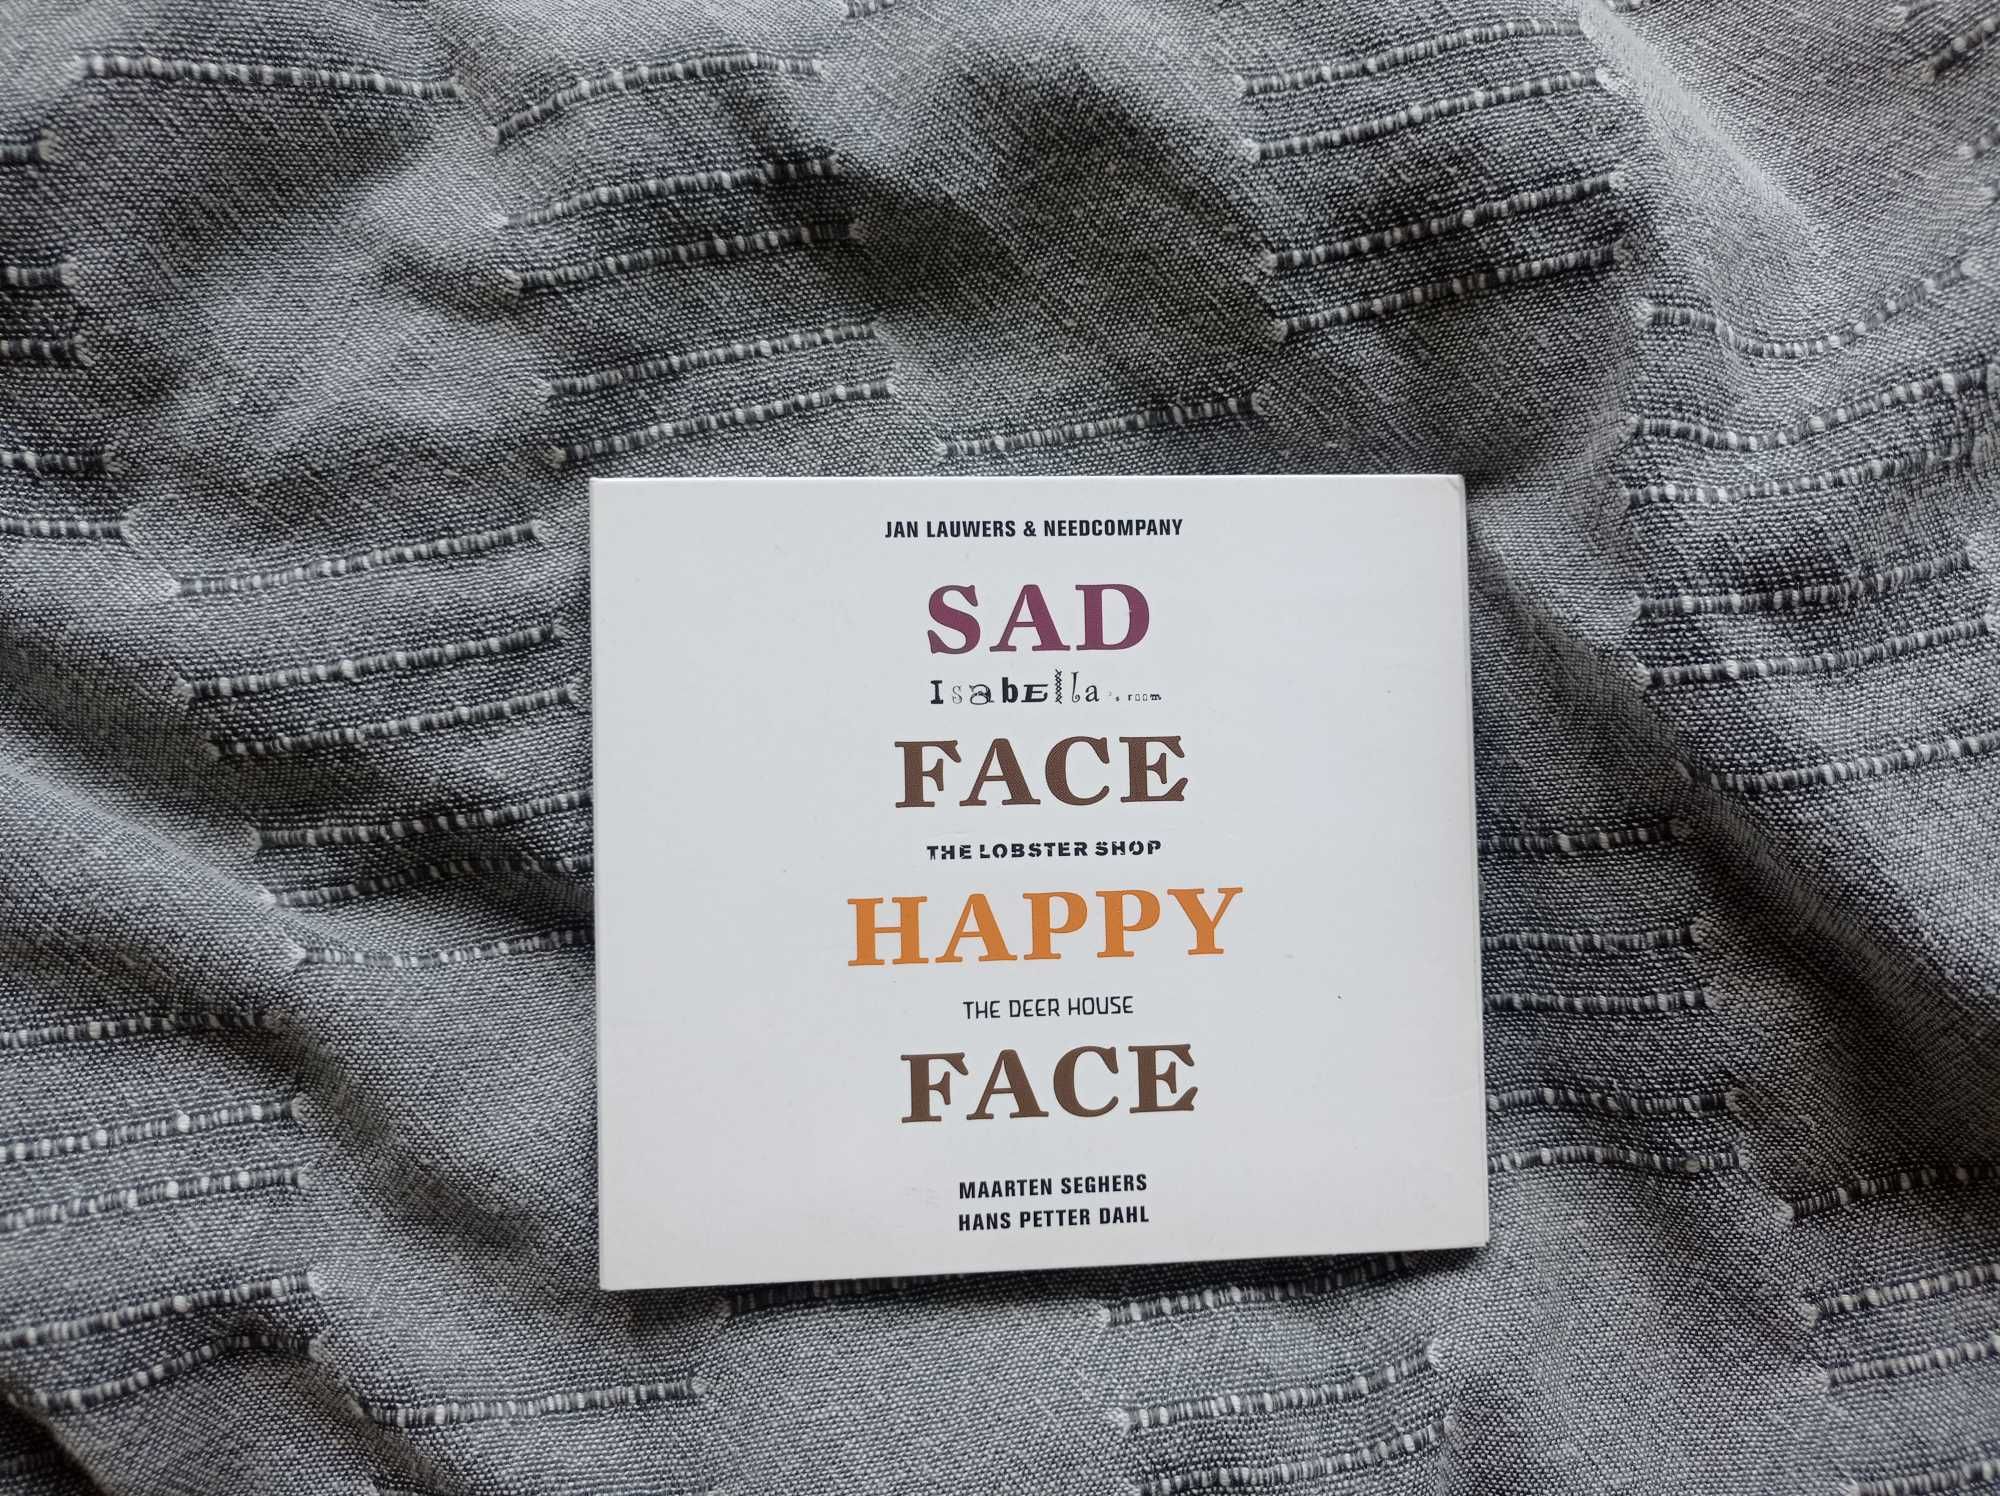 Needcompany Sad Face Happy Face - płyta CD